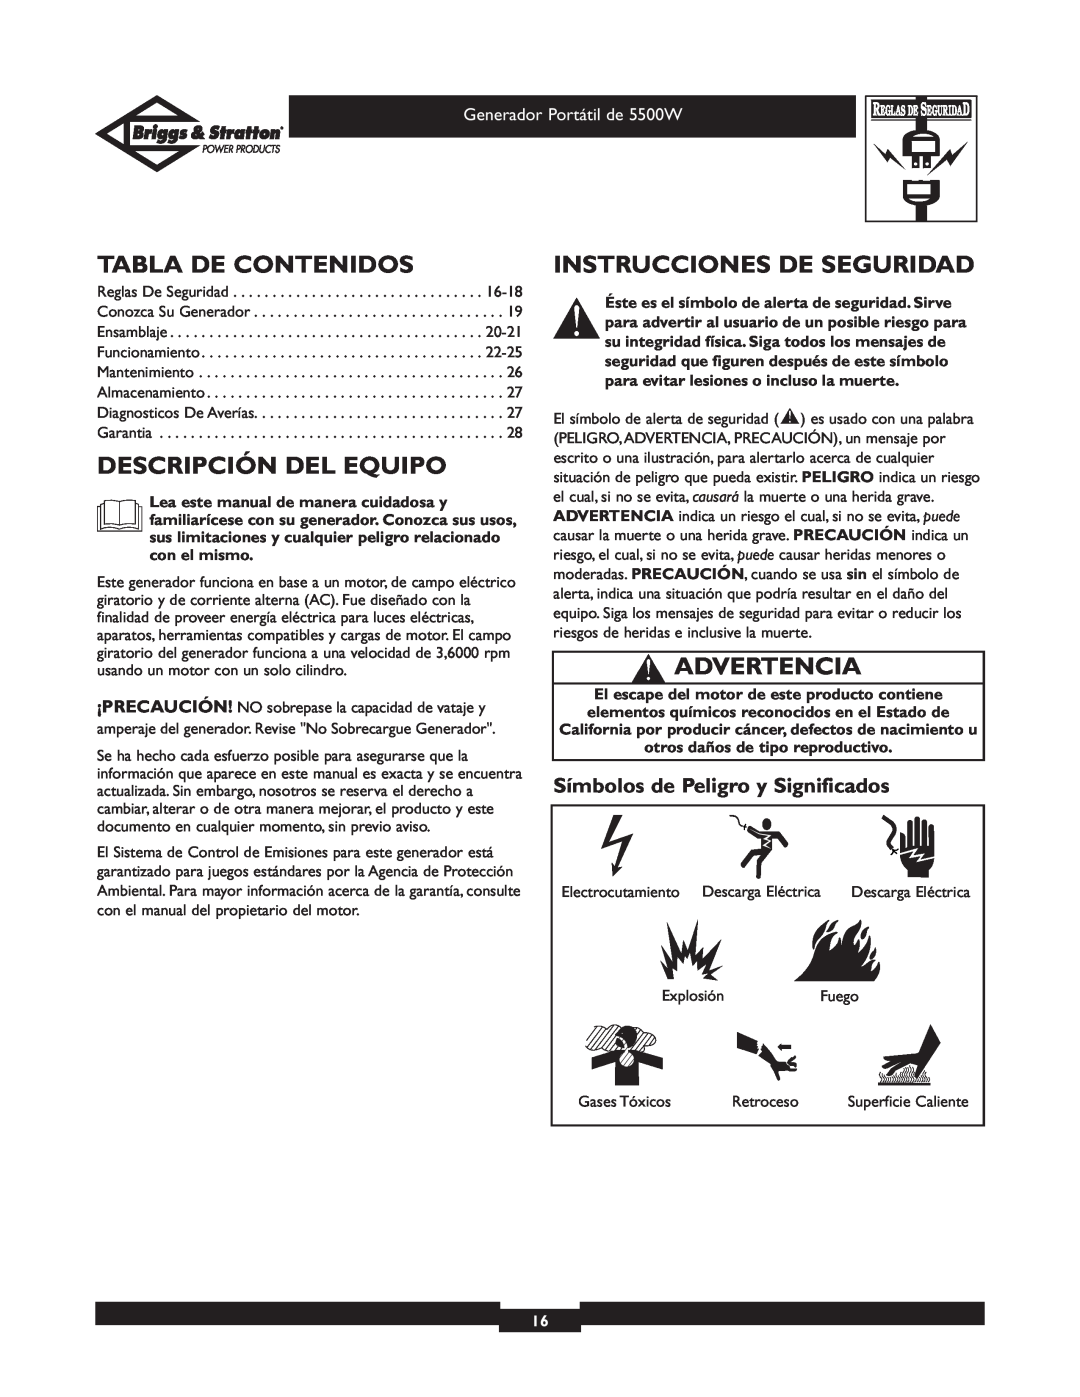 Briggs & Stratton 030209 owner manual Tabla De Contenidos, Descripción Del Equipo, Instrucciones De Seguridad, Advertencia 